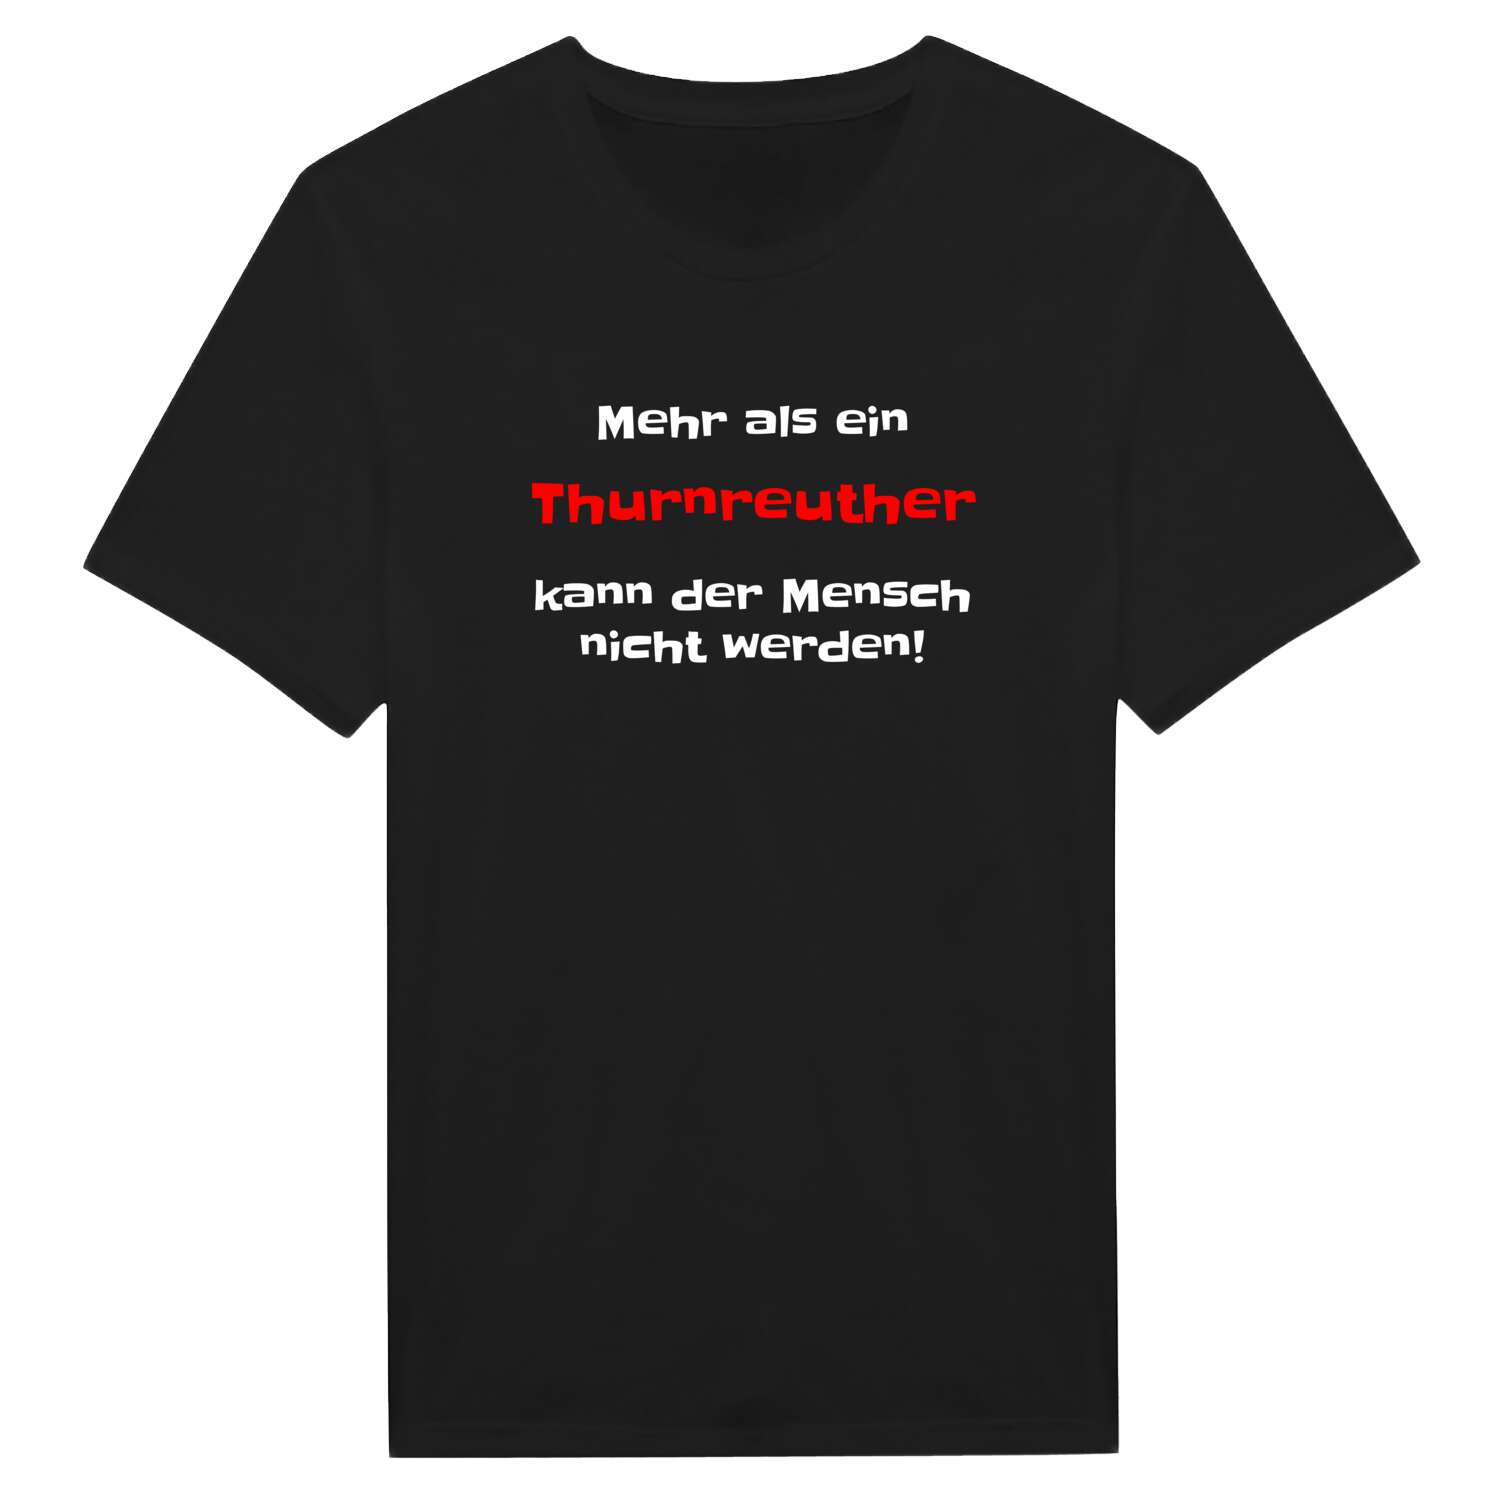 Thurnreuth T-Shirt »Mehr als ein«